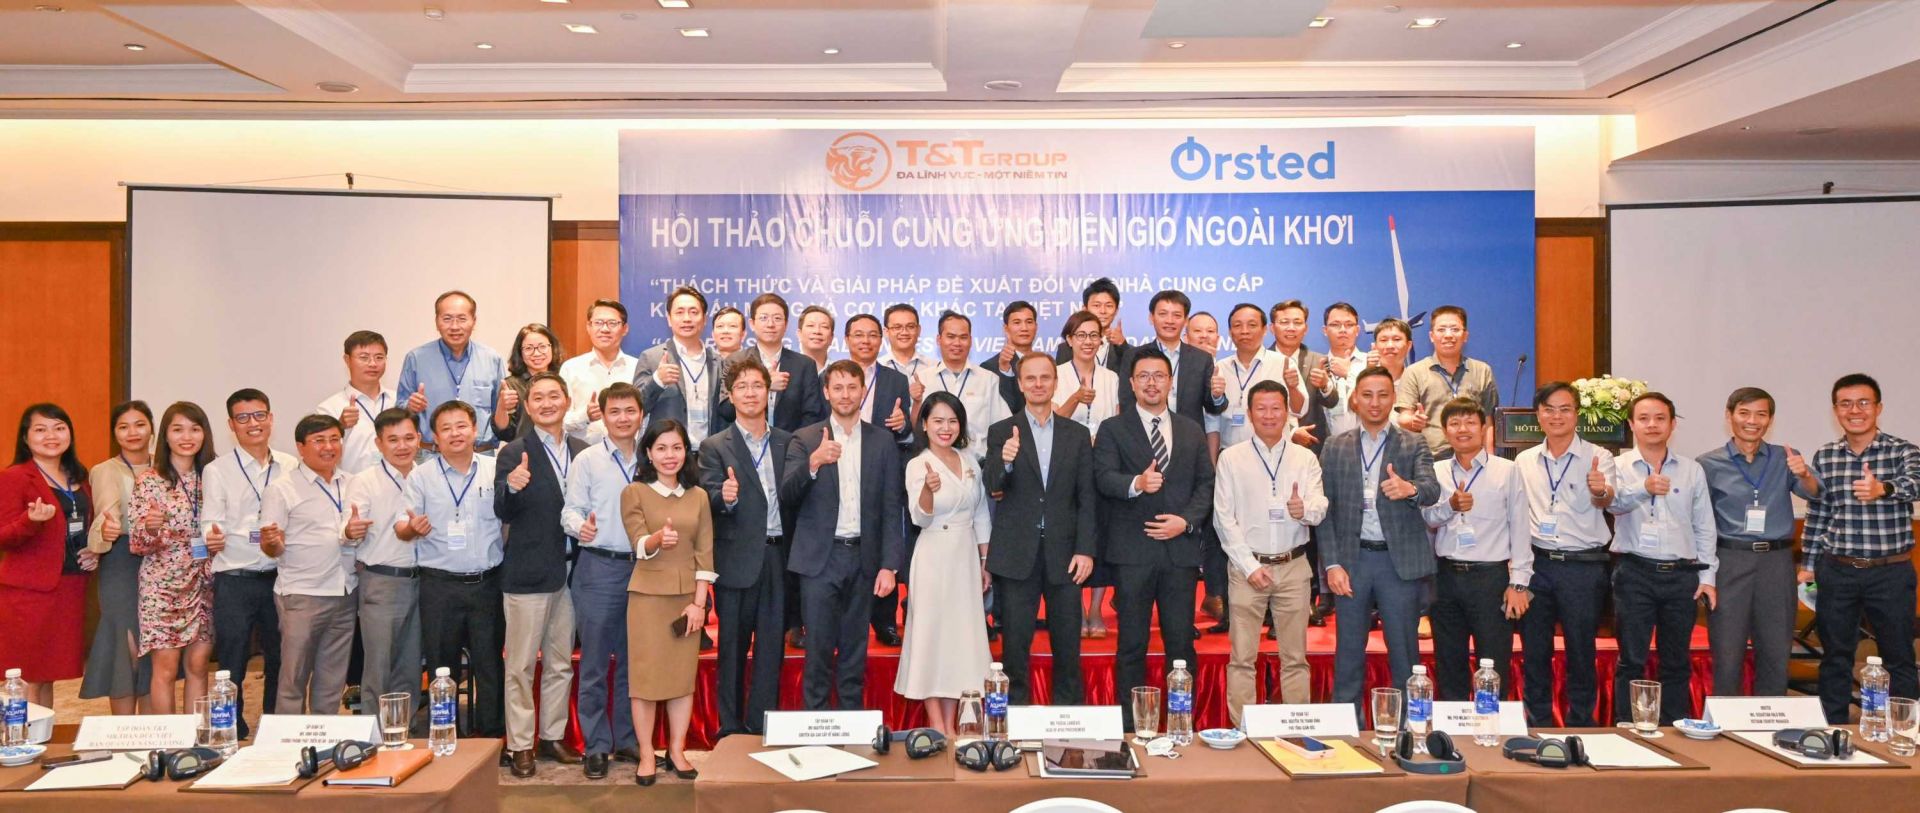 Hội thảo “Chuỗi cung ứng điện gió ngoài khơi: Thách thức và giải pháp đề xuất đối với nhà cung cấp kết cấu móng và cơ khí khác tại Việt Nam”